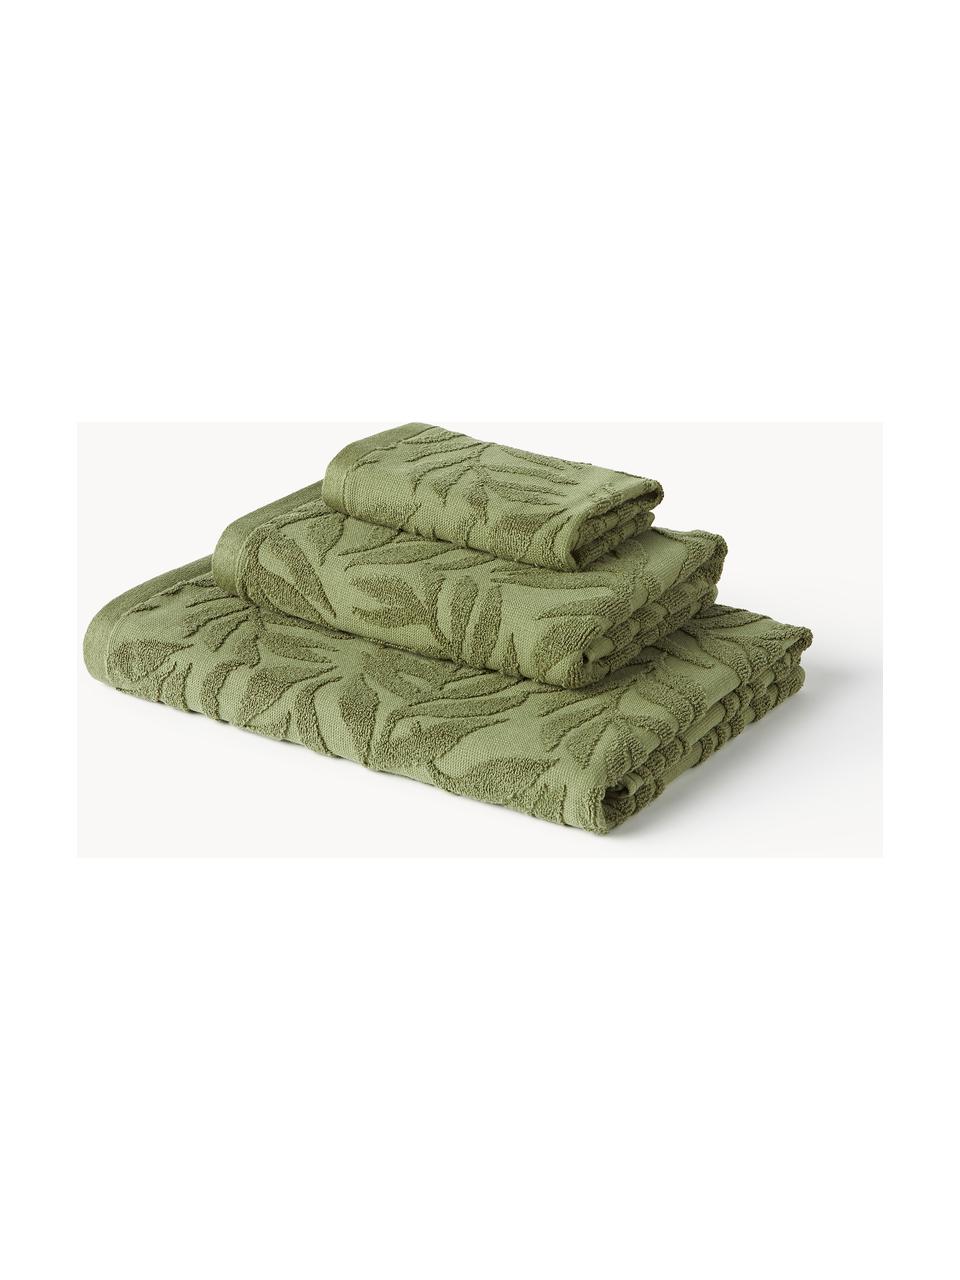 Lot de serviettes de bain en coton Leaf, set de tailles variées, Vert foncé, 4 éléments (2 serviettes de toilette et 2 draps de bain)